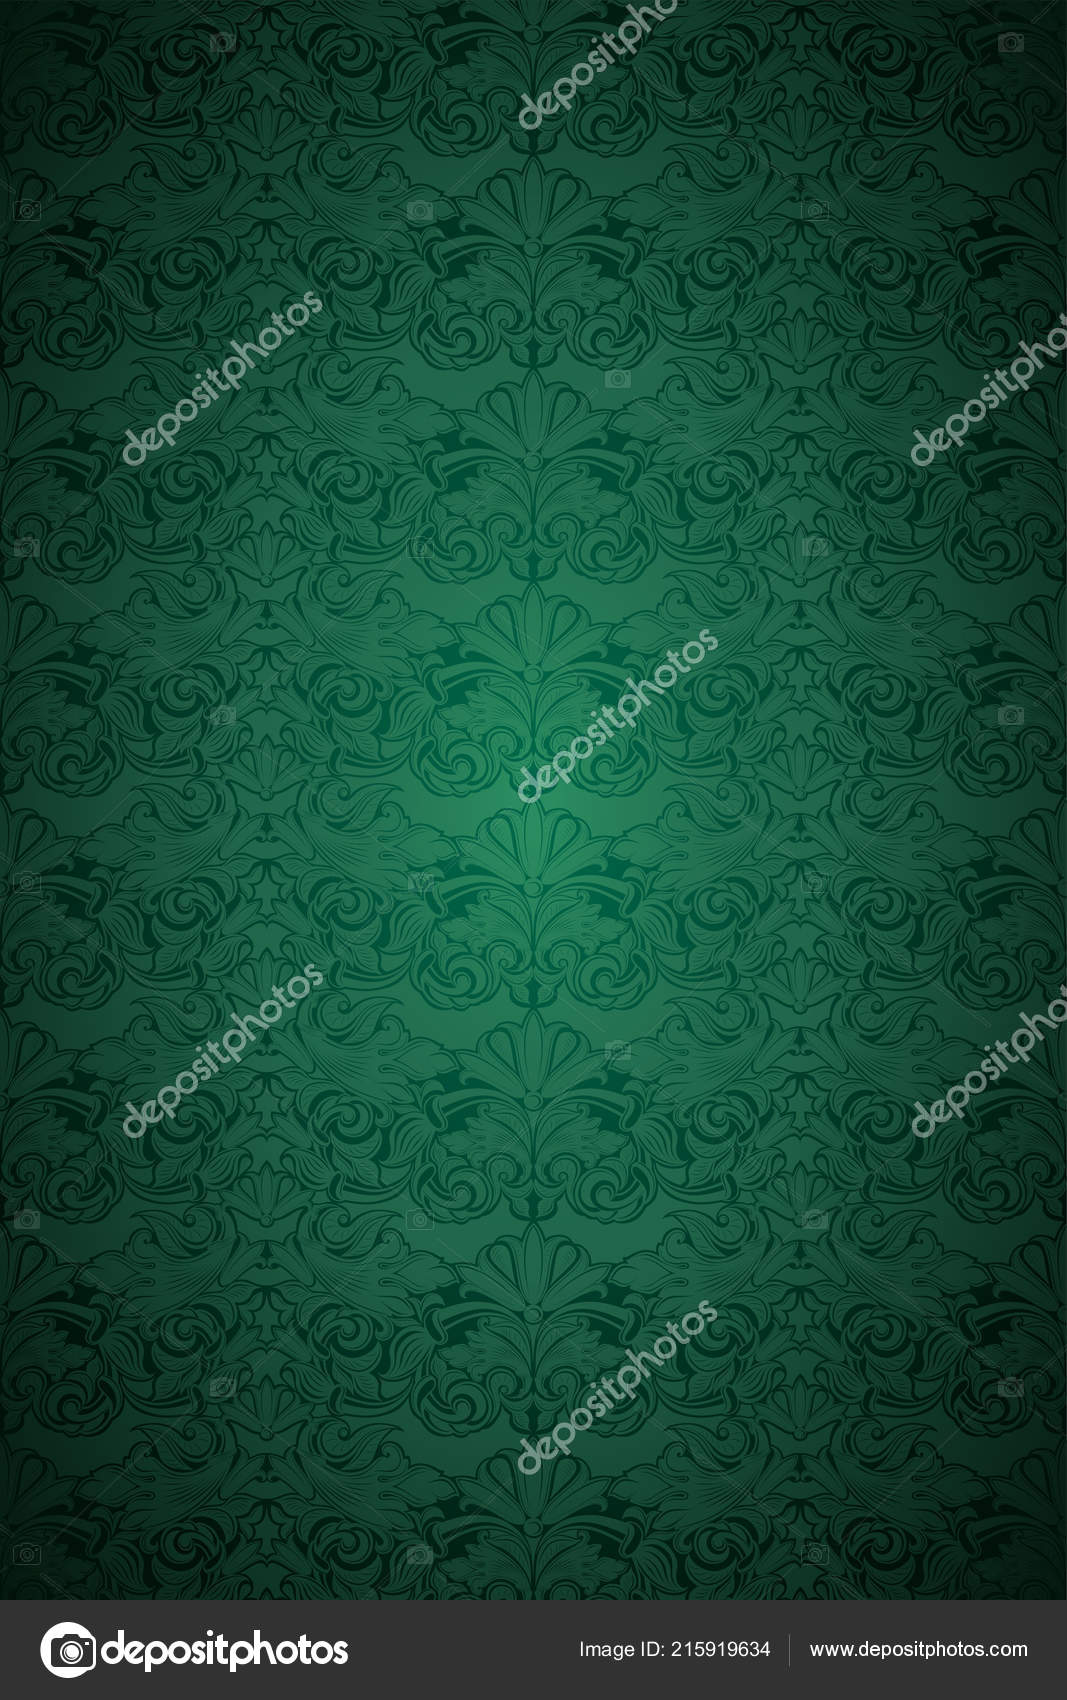 緑ヴィンテージ背景は 古典的なバロック様式パターン 暗いエッジ背景 カード 招待状 バナー を持つロココとロイヤル 垂直方向のフォーマット ストックベクター C Xennya